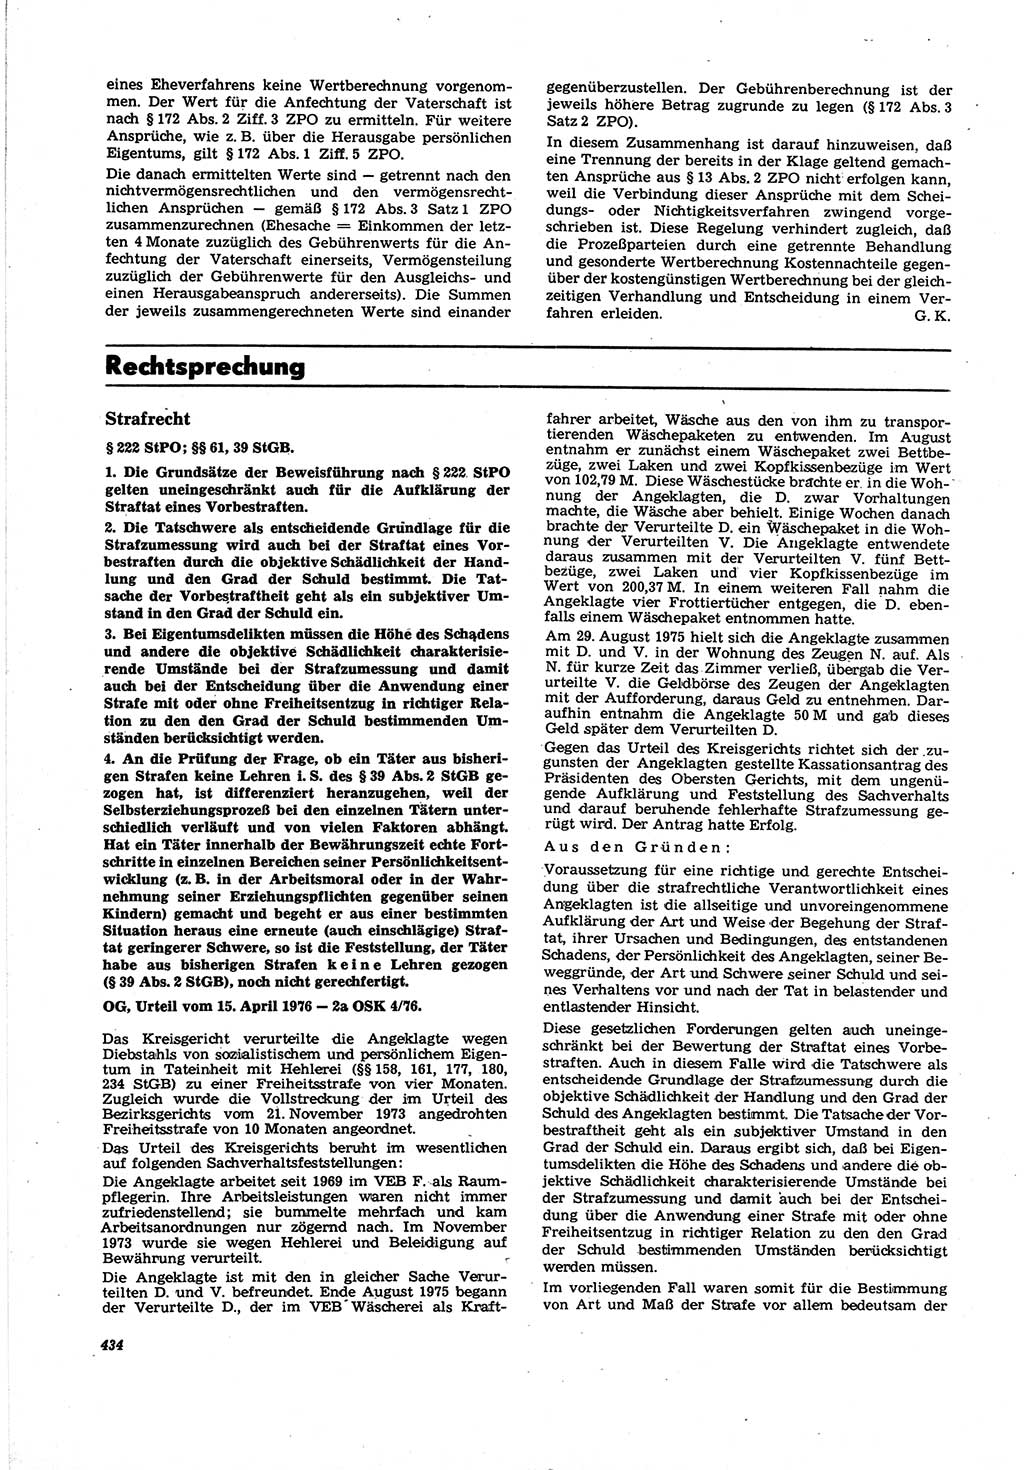 Neue Justiz (NJ), Zeitschrift für Recht und Rechtswissenschaft [Deutsche Demokratische Republik (DDR)], 30. Jahrgang 1976, Seite 434 (NJ DDR 1976, S. 434)